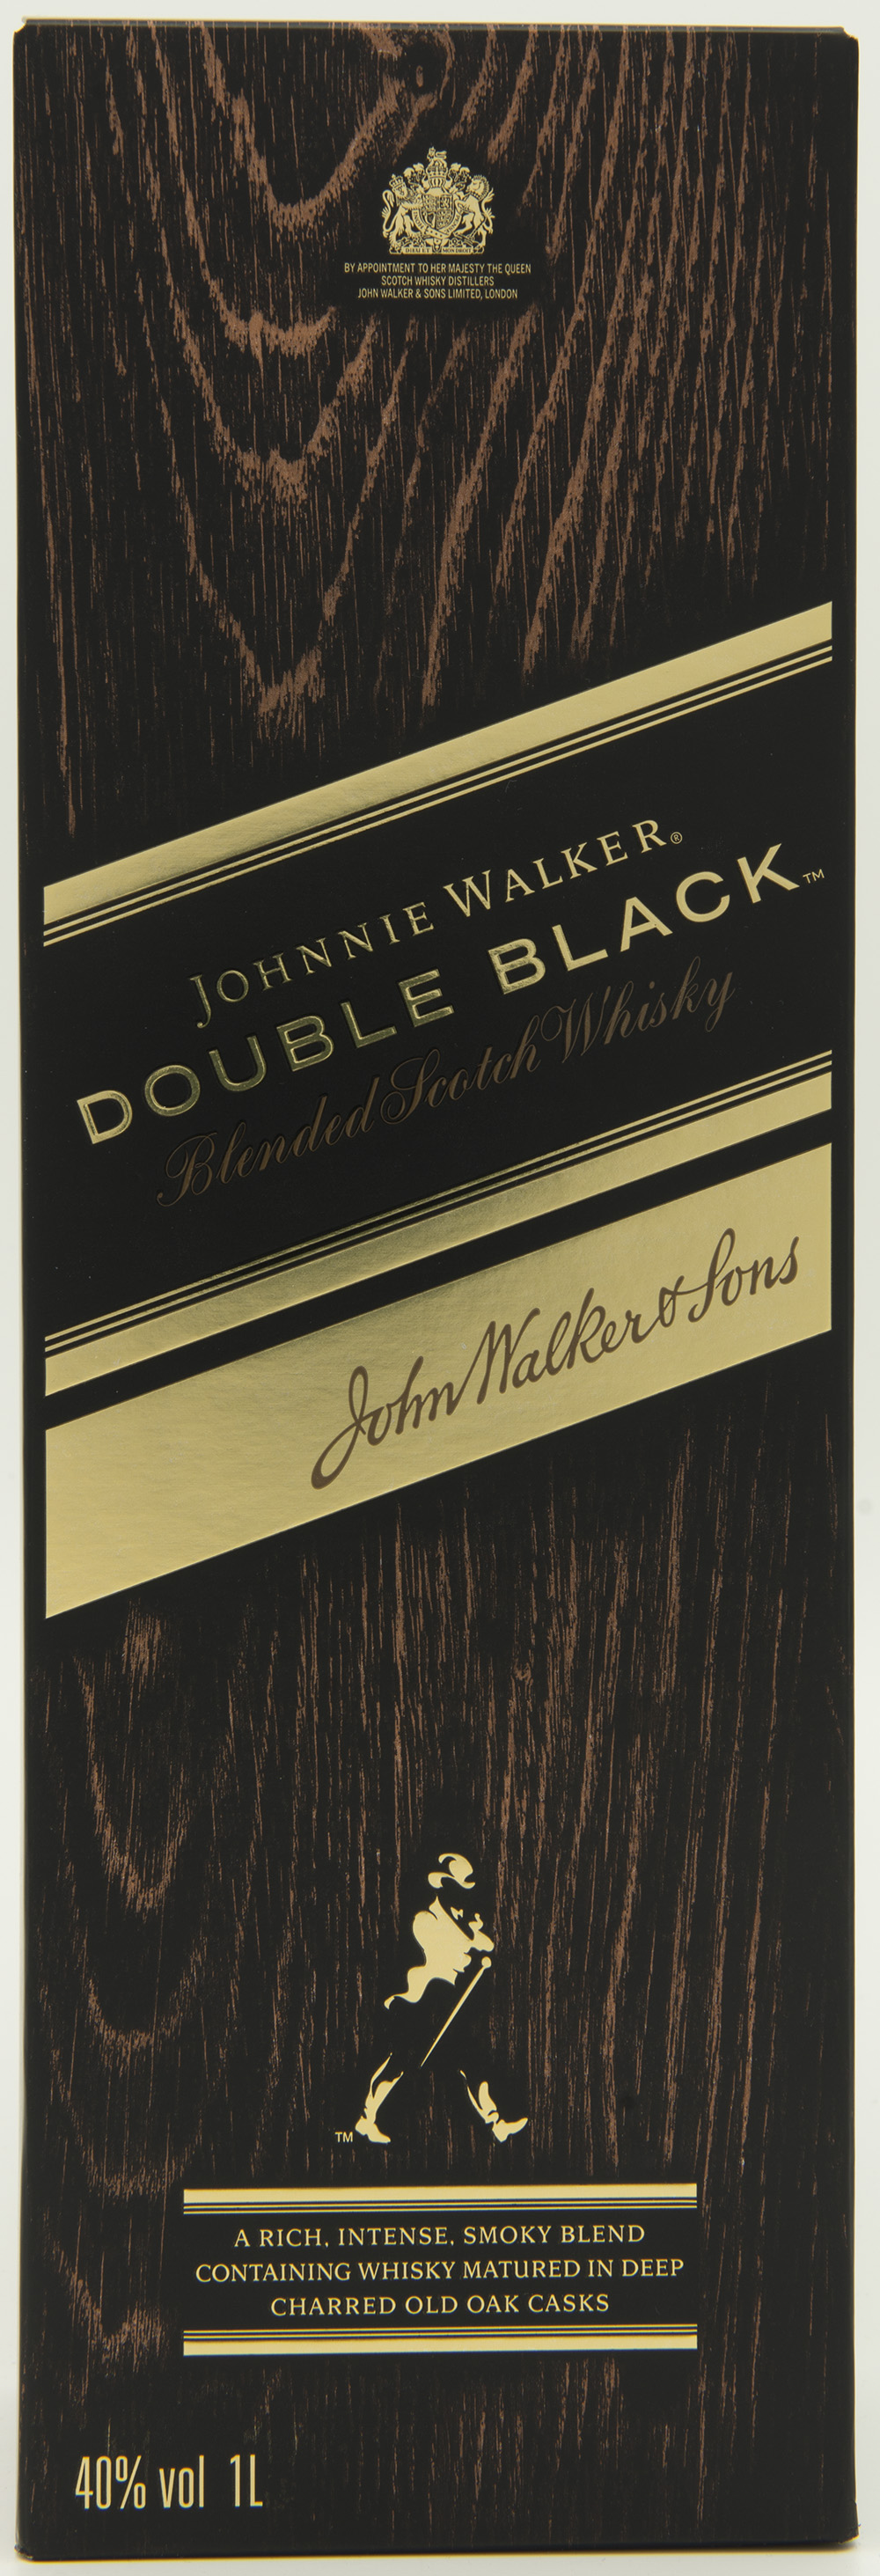 Billede: DSC_6984 - Johnny Walker - Double Black - box front.jpg